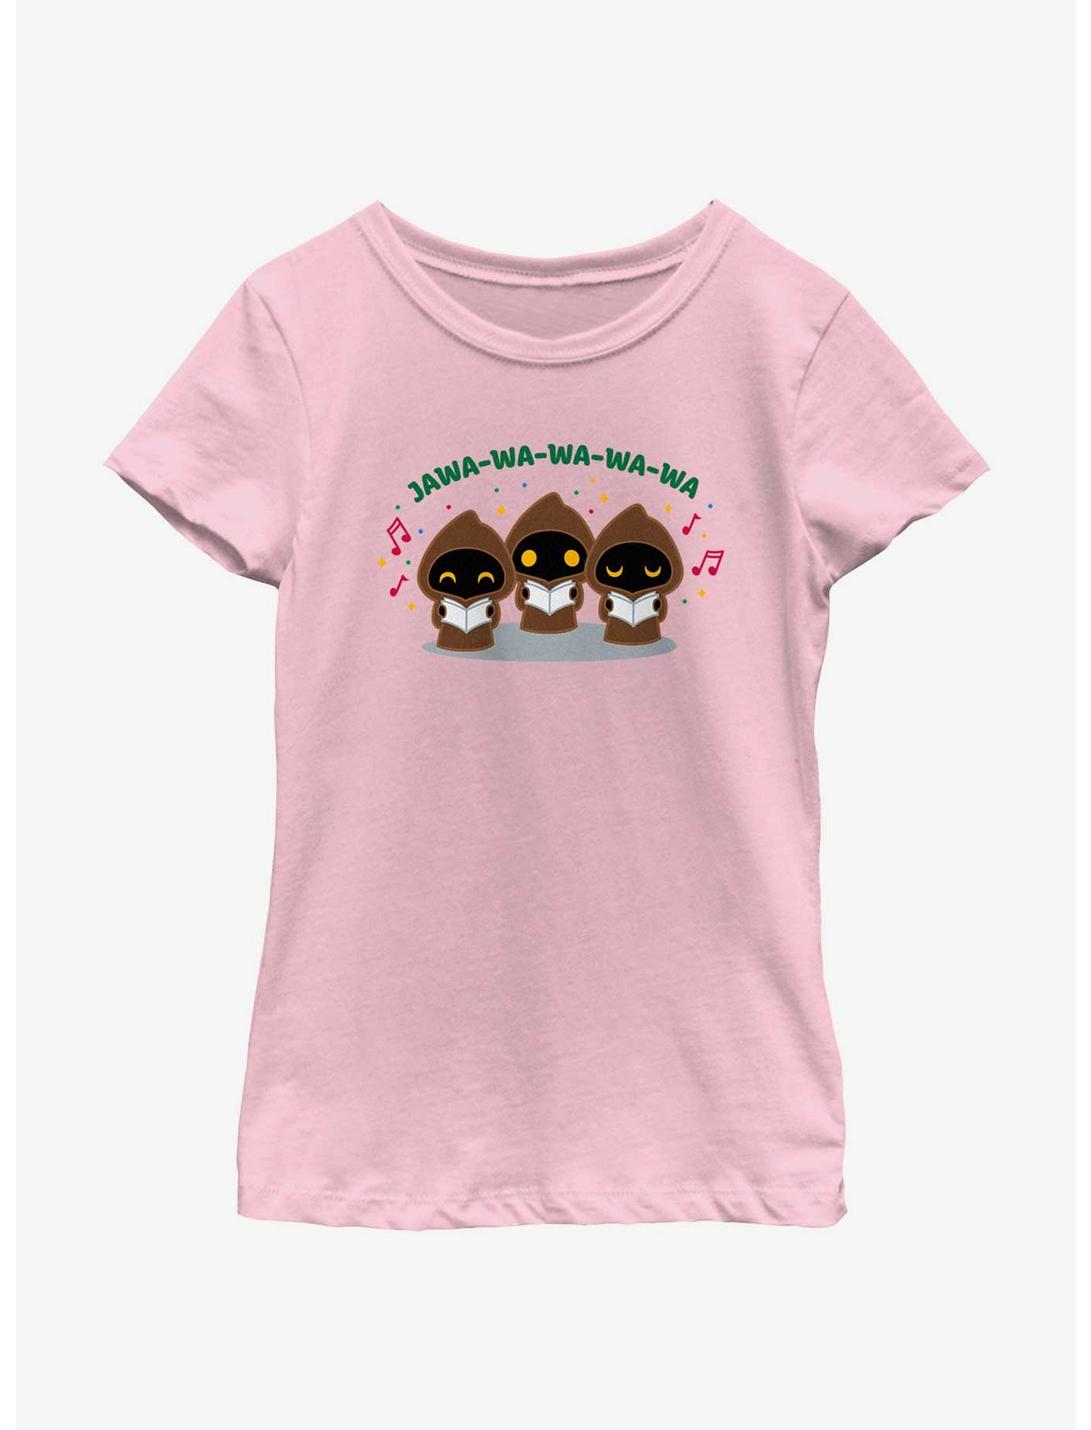 Star Wars Jawa Carolers Youth Girls T-Shirt, PINK, hi-res